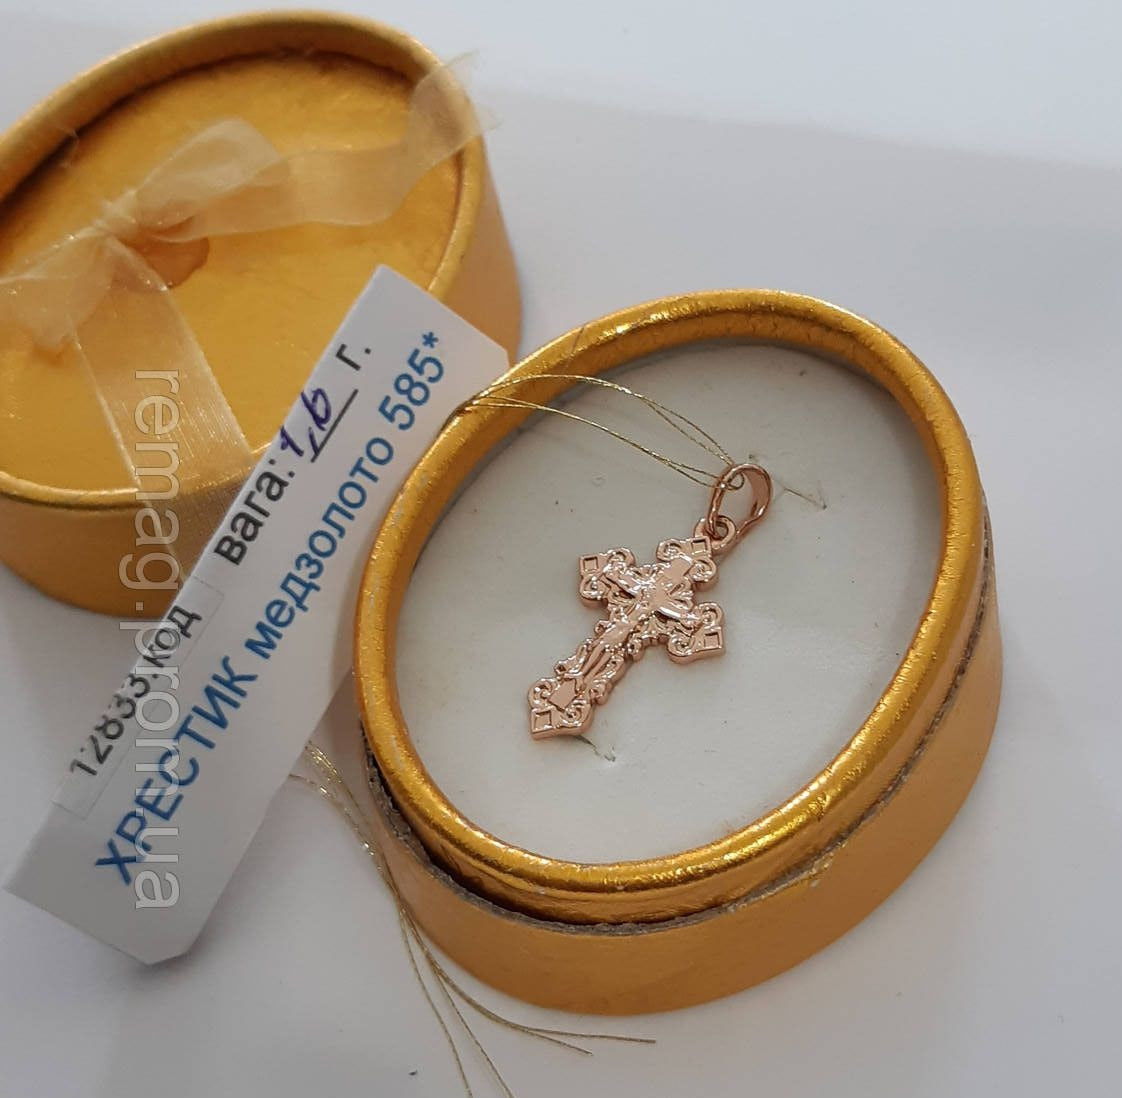 Класичний "Хрестик із розп'яттям в золоті" з ювелірного сплаву - оригінальний подарунок хлопцю, дівчині